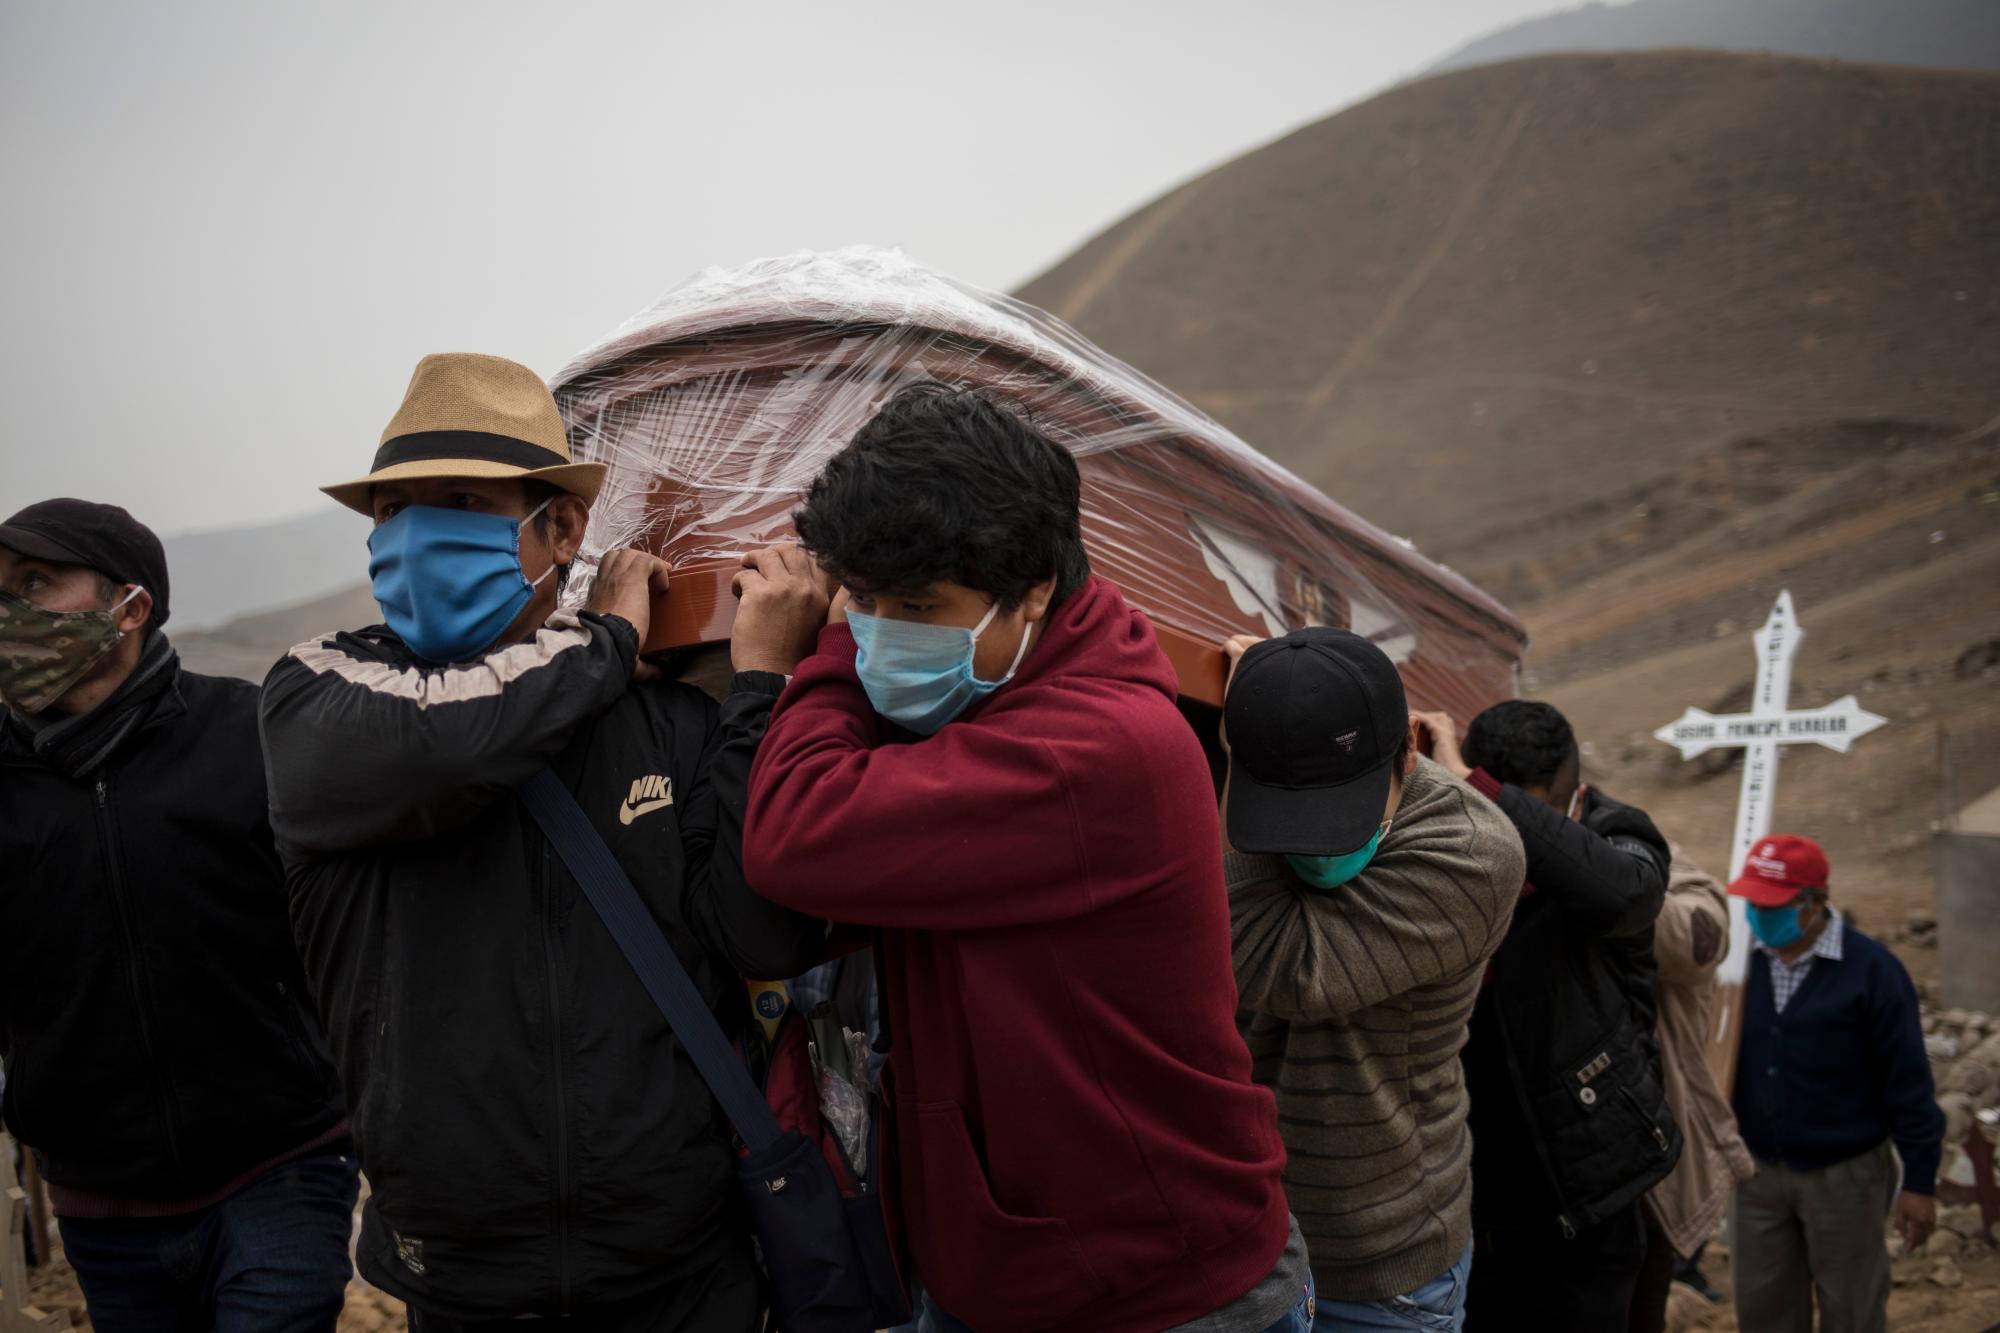 Los familiares que usan máscaras para protegerse de la propagación del nuevo coronavirus llevan el ataúd con el cadáver de Sosimo Herrera, quien murió de COVID-19, en el cementerio de Nueva Esperanza, en las afueras de Lima, Perú, el martes 26 de mayo de 2020. (AP Foto / Rodrigo Abd)